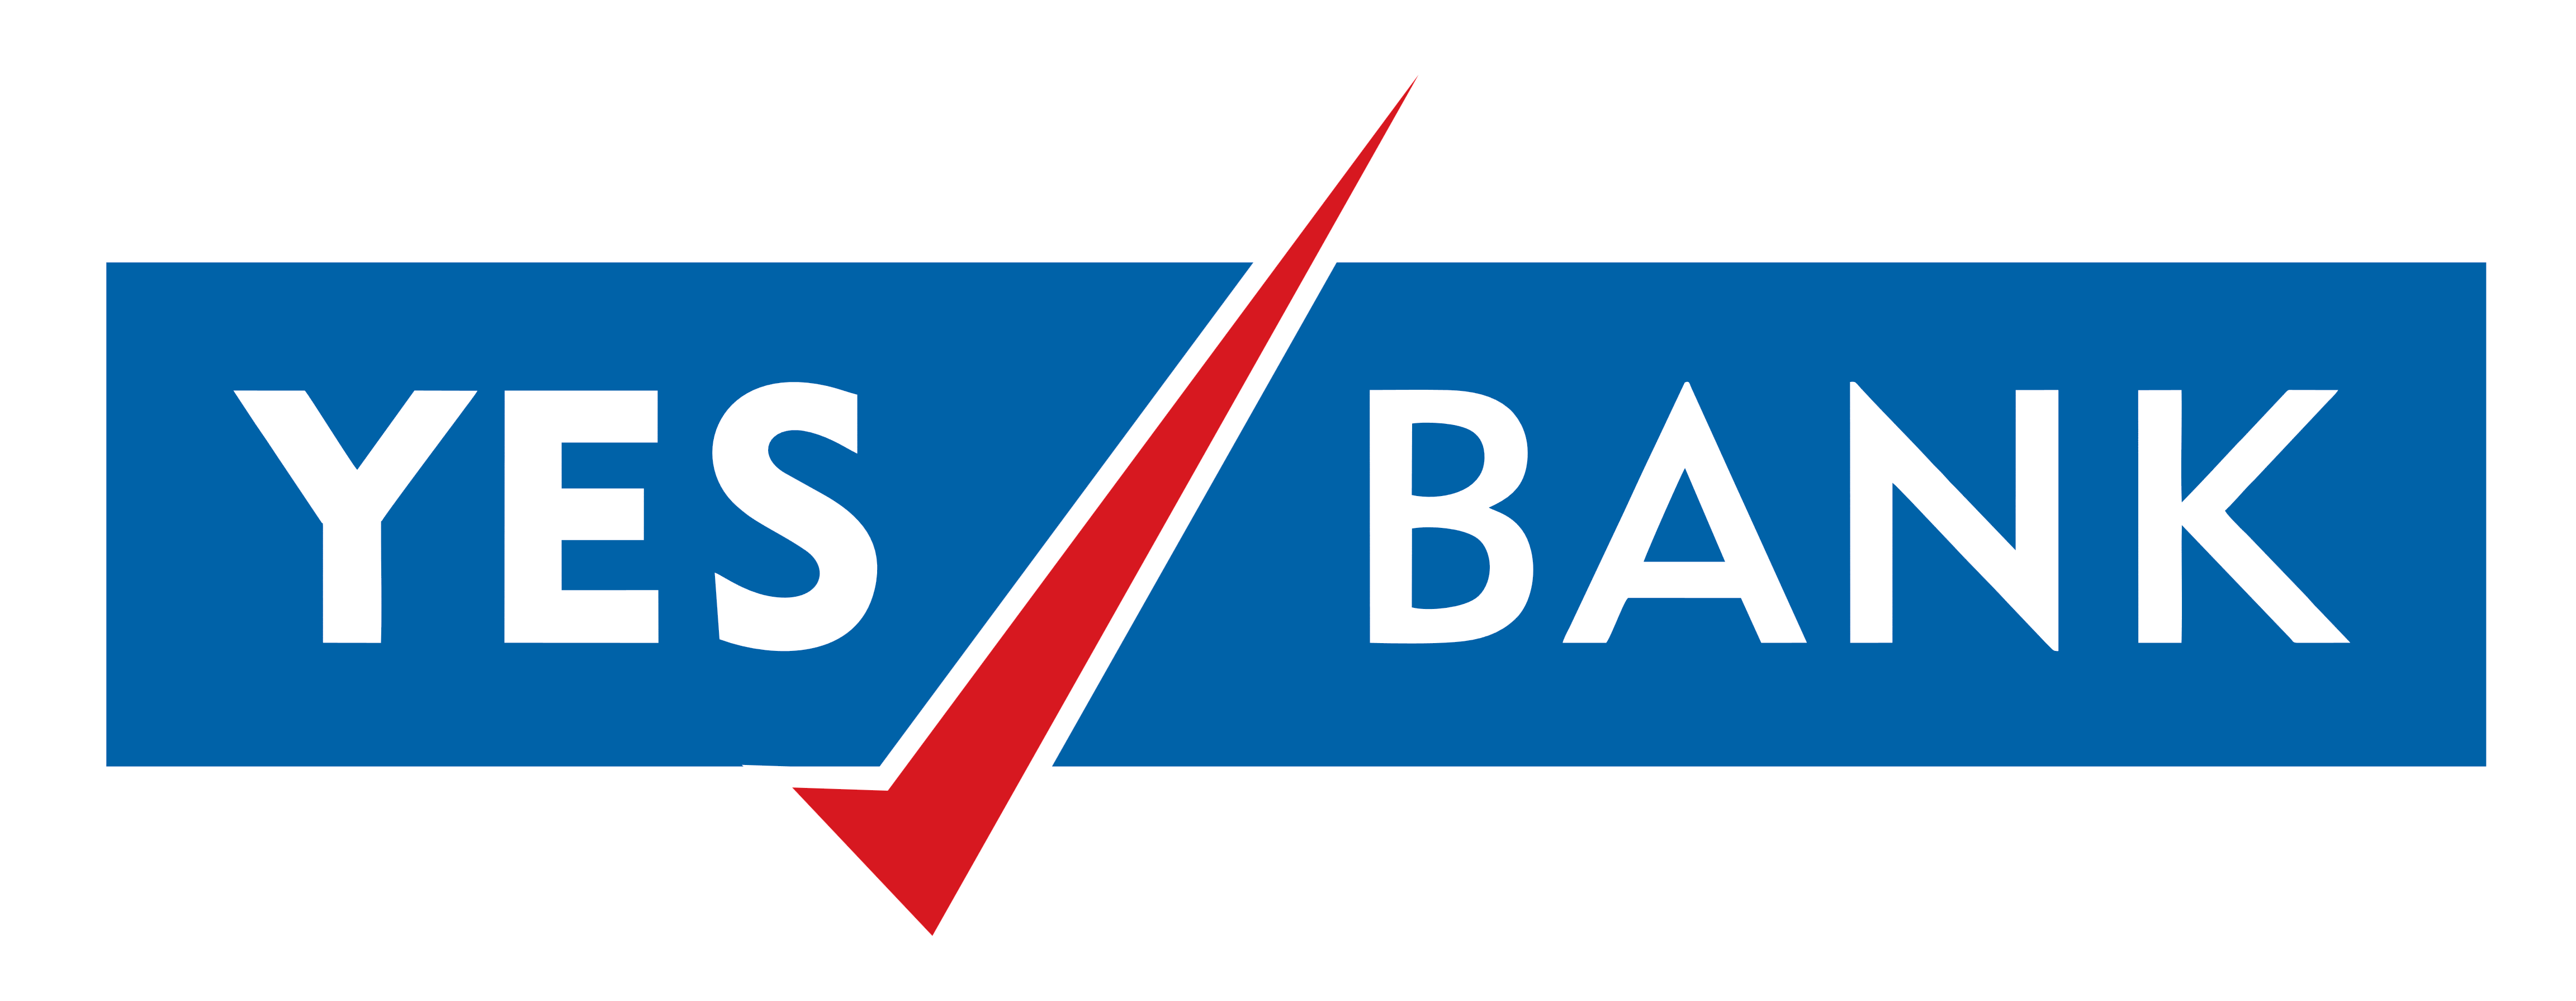 Yes Bank â€“ Logos Download